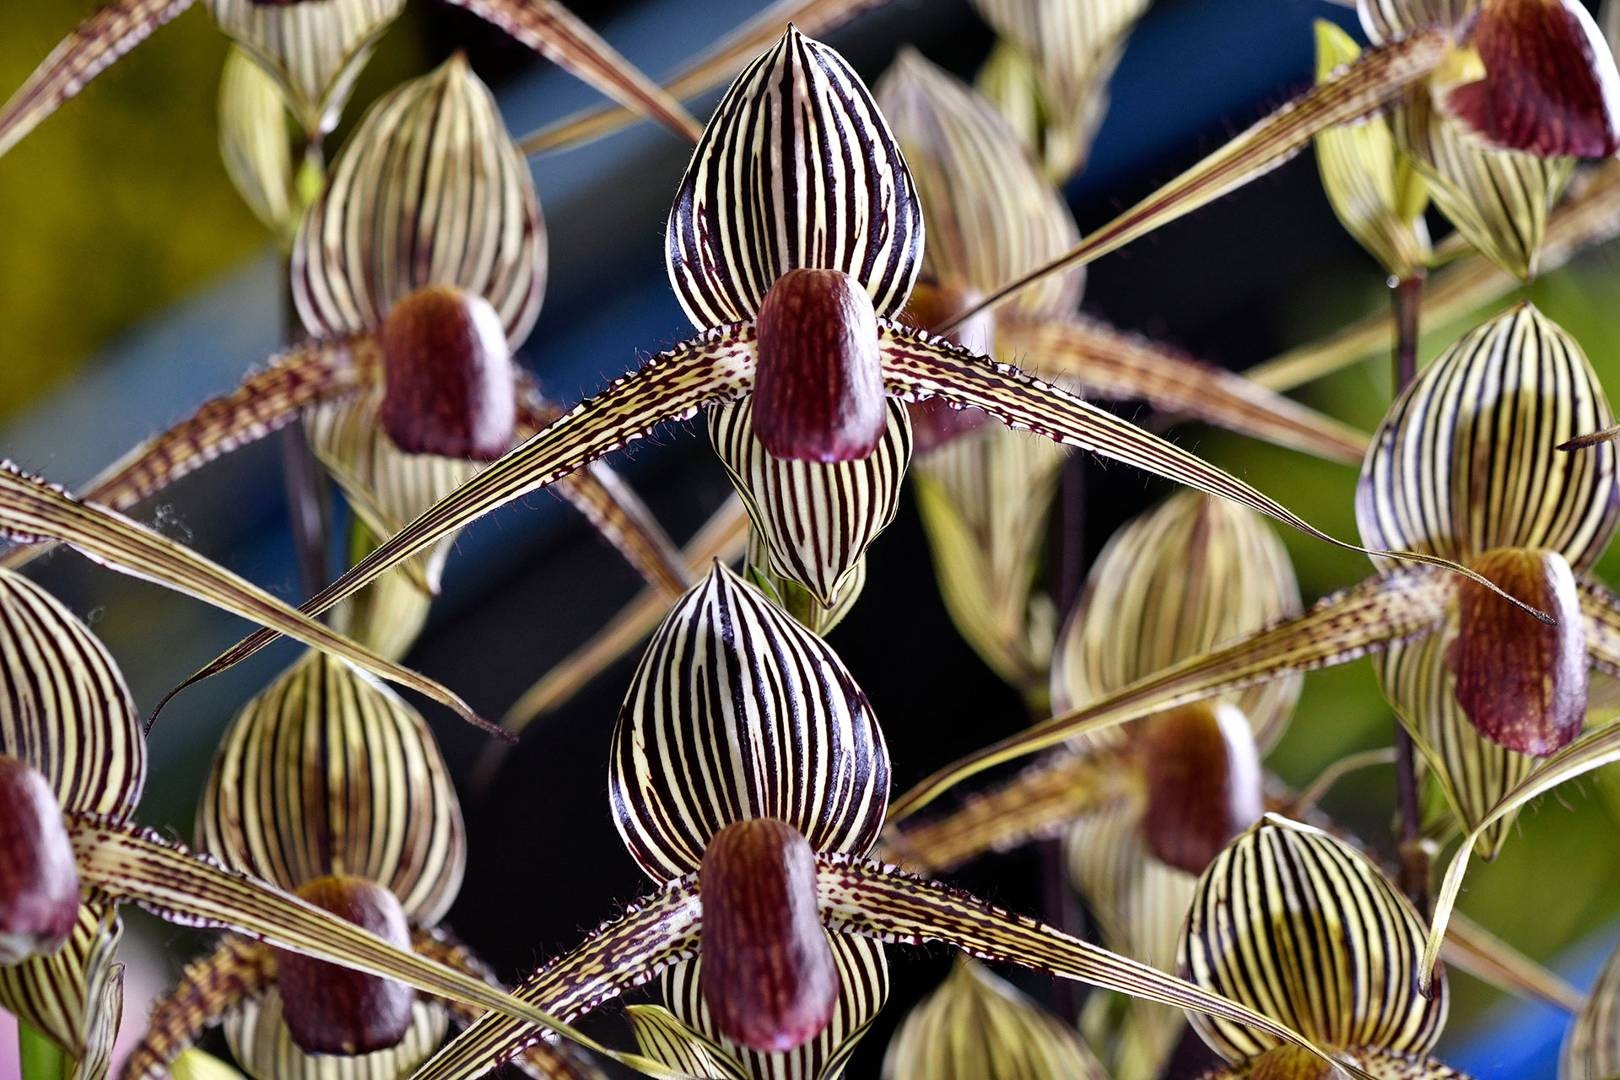 De todas as variedades de orquídeas do planeta, Kinabalu é reconhecida como a mais rara (Foto: Wikimedia Commons / Creative Commons)